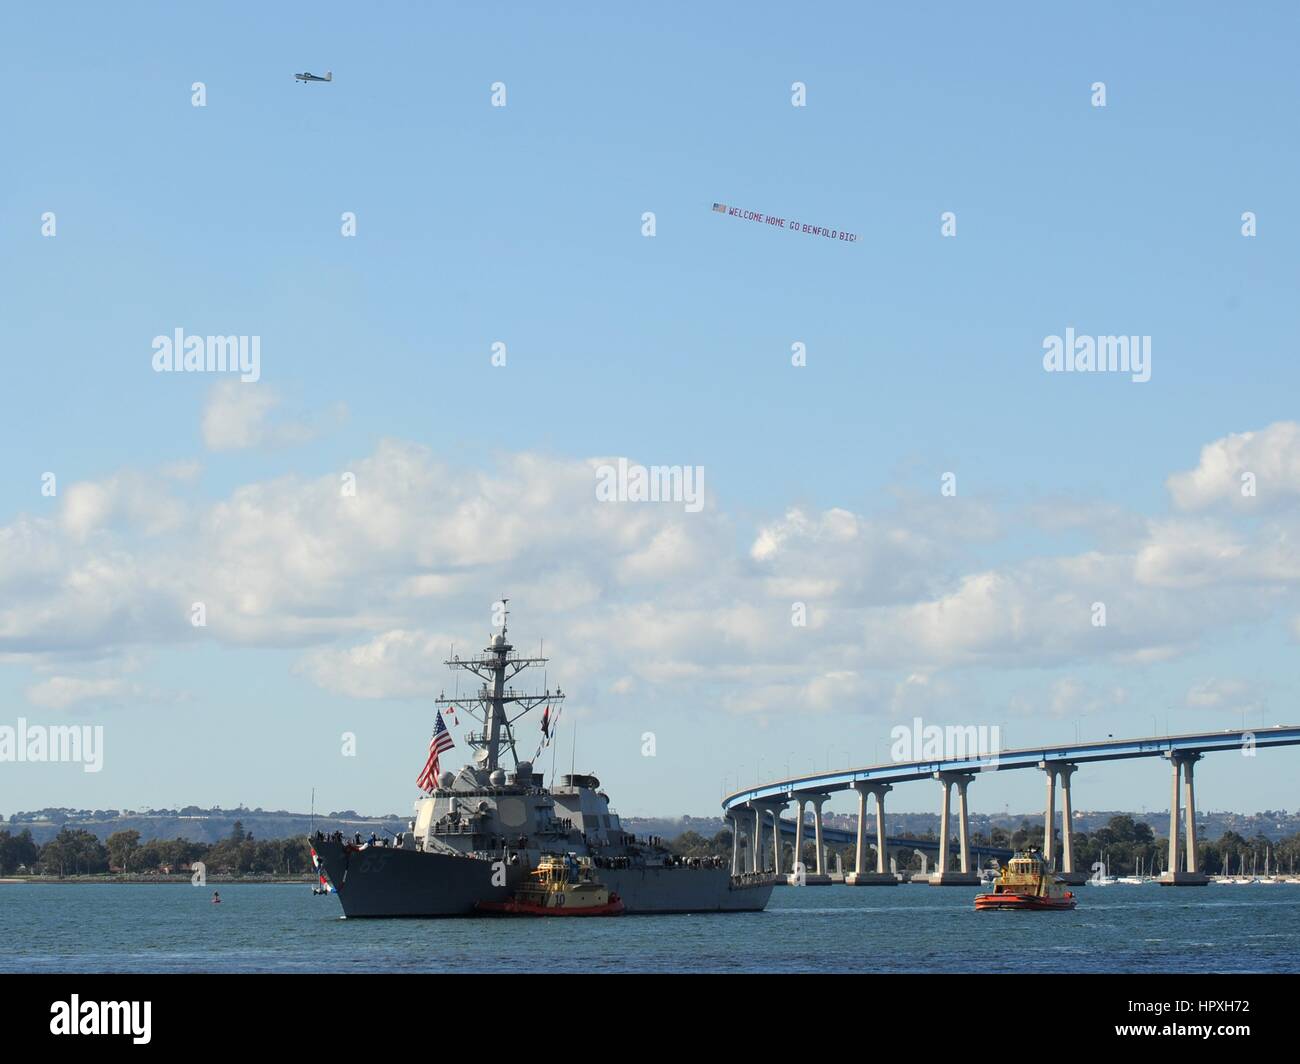 Il Arleight Burke-class guidato-missile destroyer USS Benfold ritorna alla stazione navale di San Diego, California, 11 gennaio 2013. Immagine cortesia US Navy la comunicazione di massa specialista in seconda classe Timoteo un nocciolo. Foto Stock